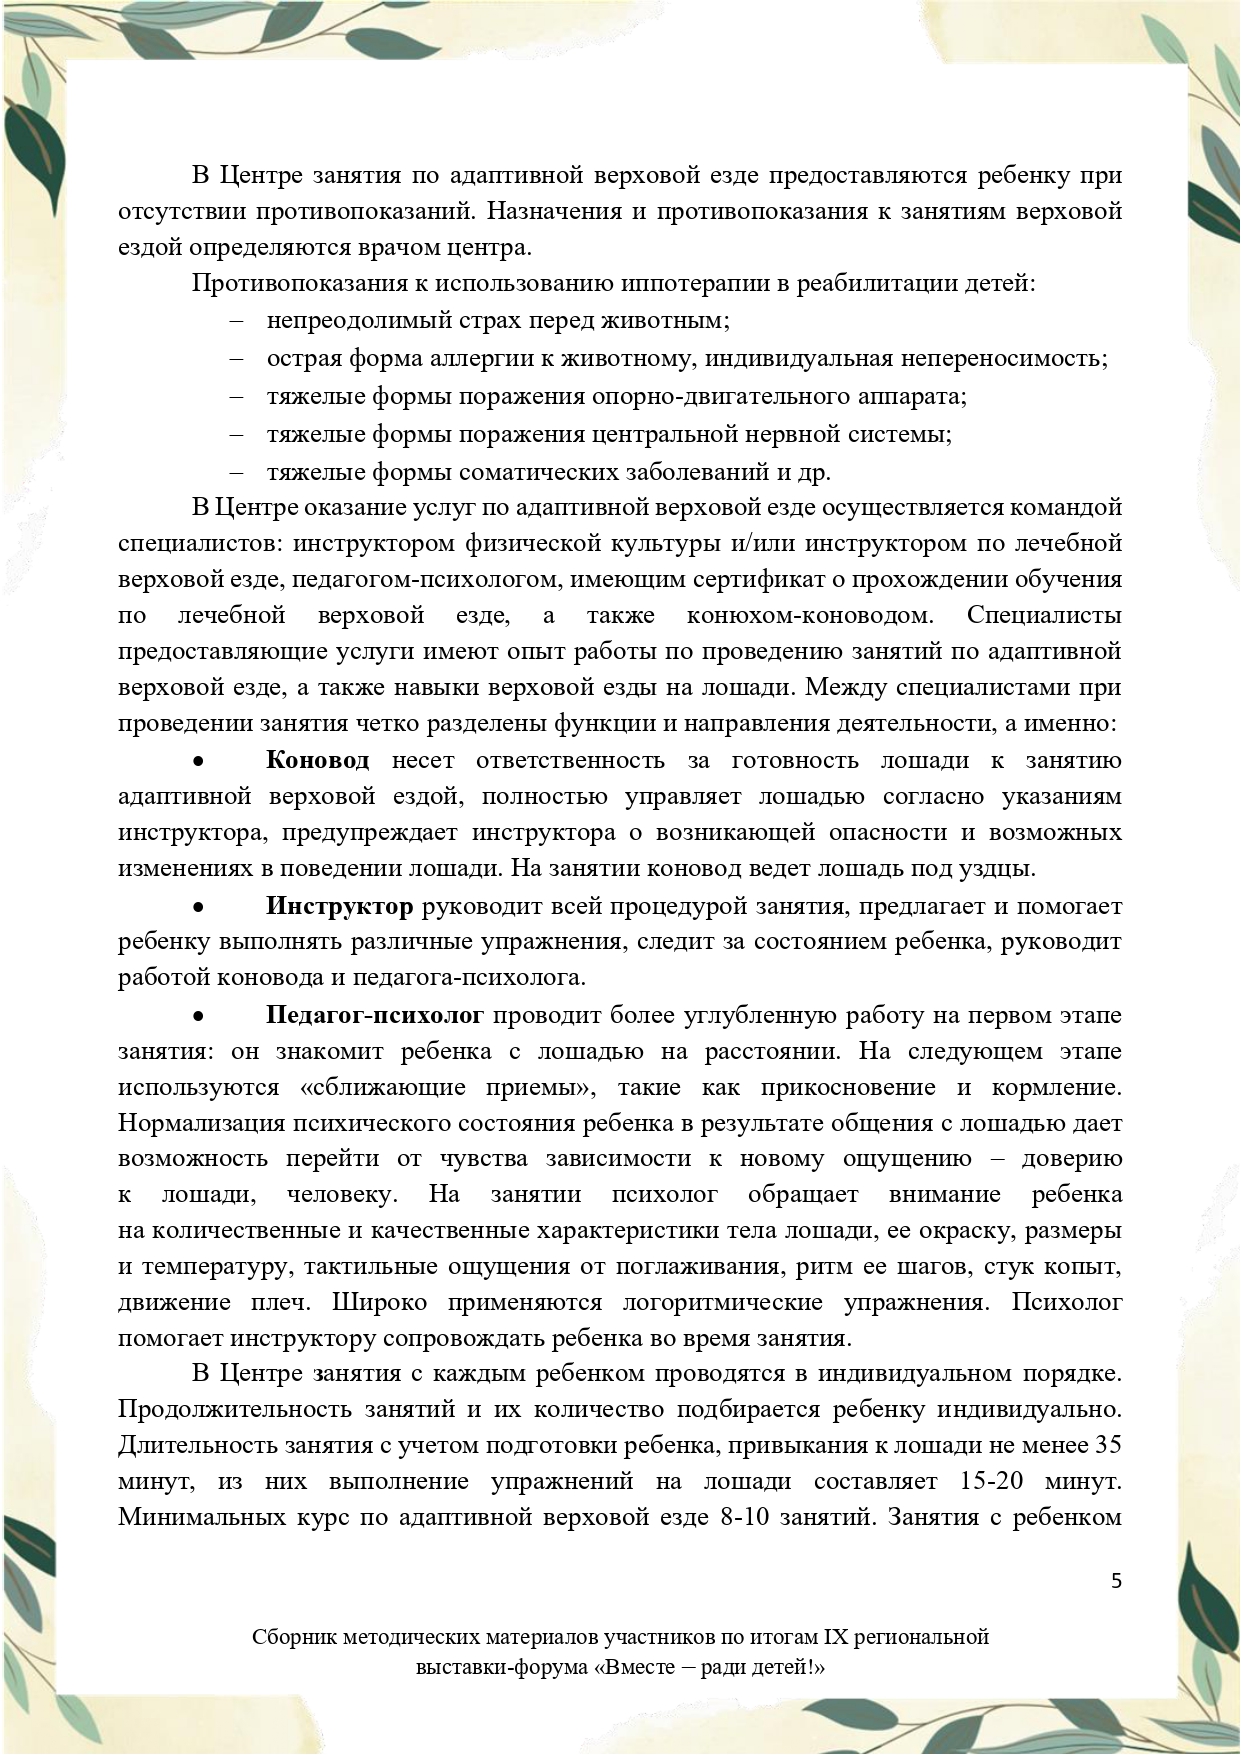 Sbornik_metodicheskikh_materialov_uchastnikov_IX_regionalnoy_vystavki-foruma_Vmeste__radi_detey_33__2023_page-0005